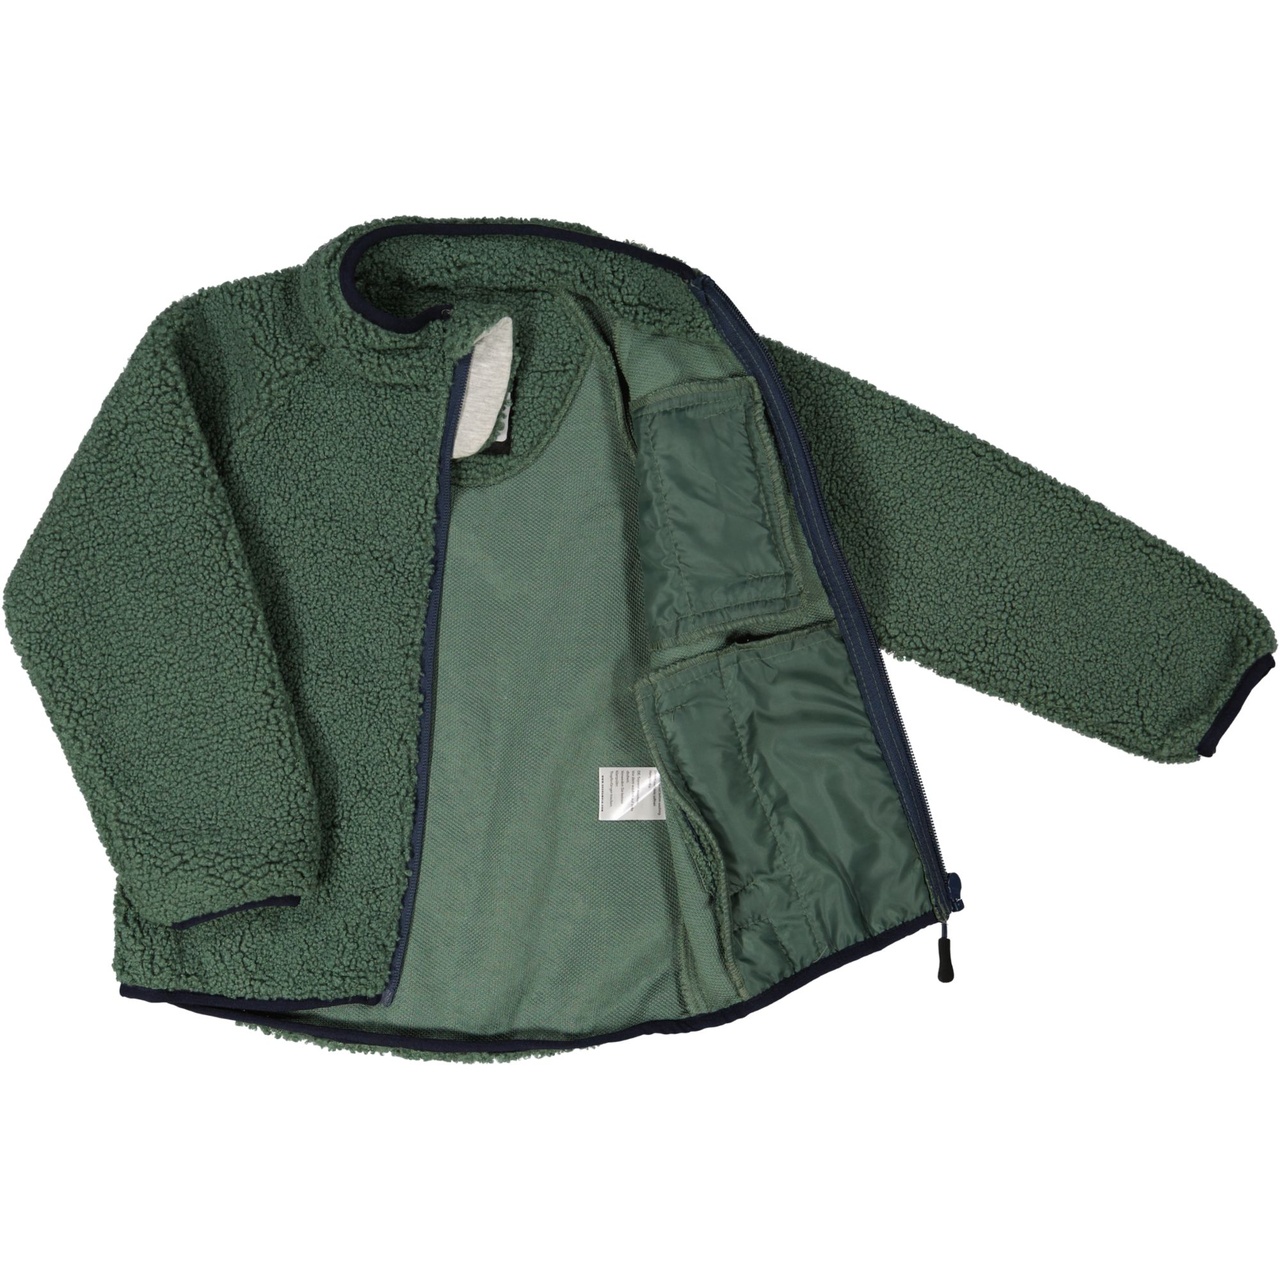 Pile jacket Moss green  110/116